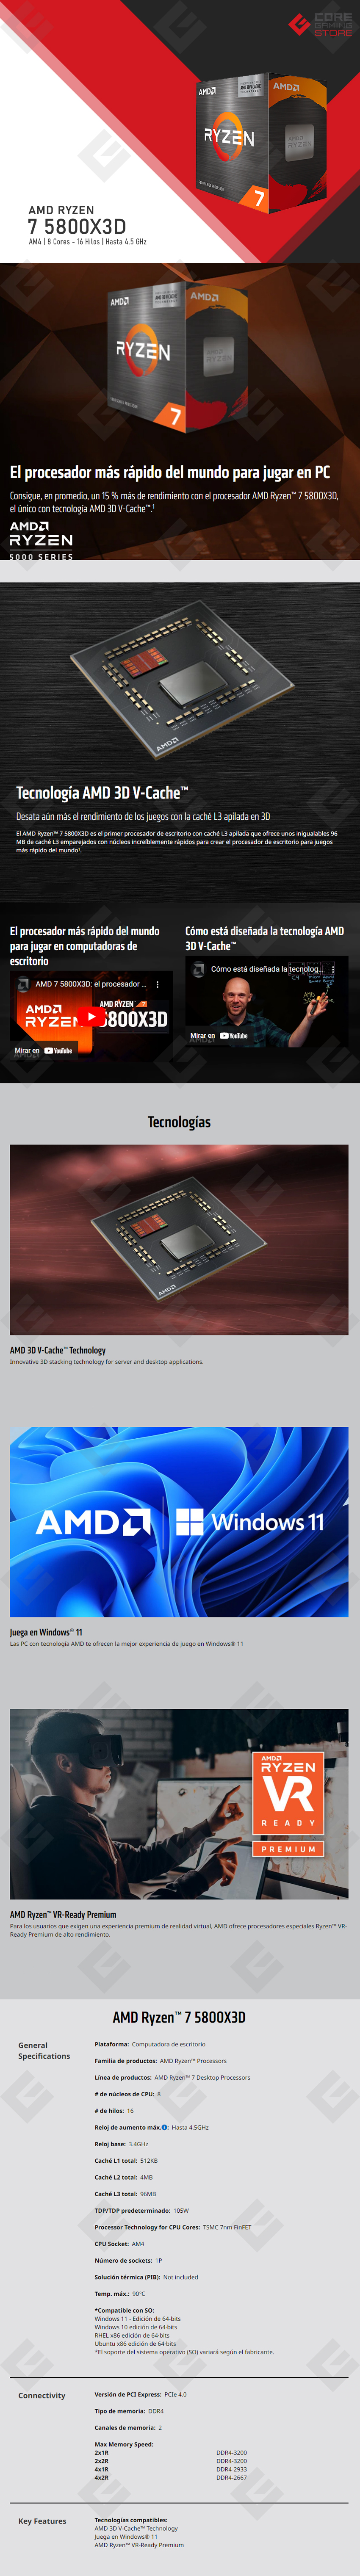 Procesador AMD Ryzen 7 5800X3D, 8 Cores, 16 Threads, 3.4Ghz Base, 4.5Ghz Max, Socket AM4 - 100-100000651WOF